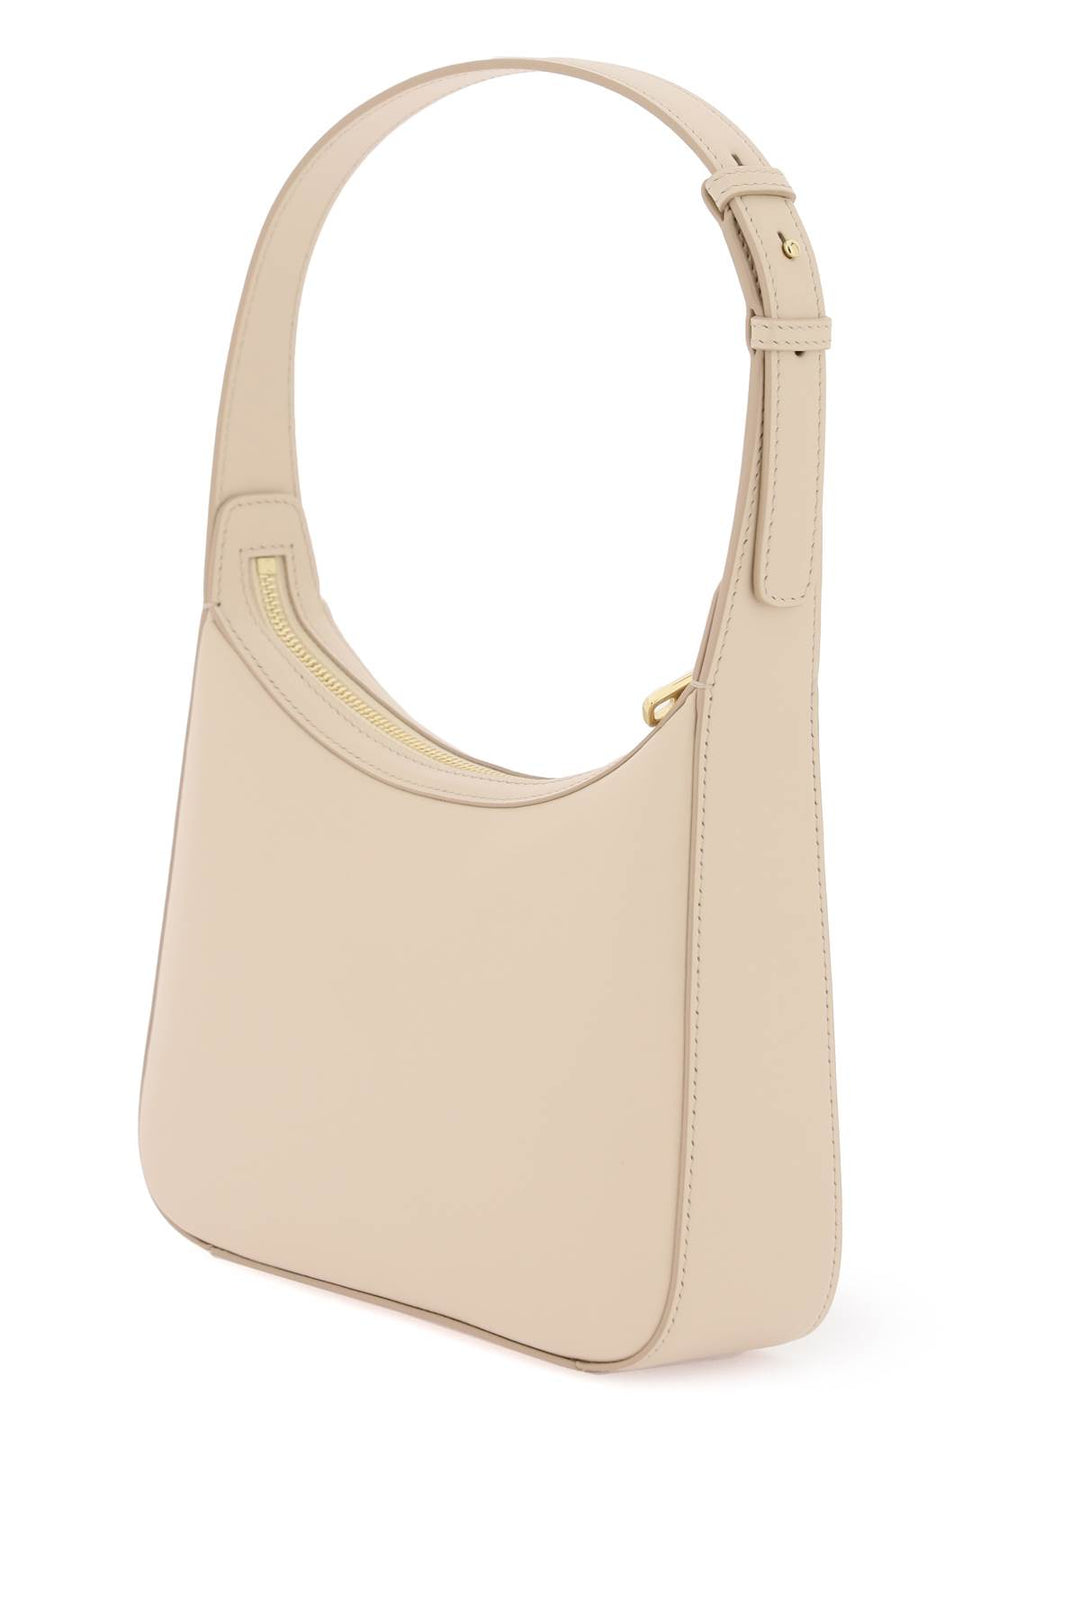 Dolce & Gabbana 3.5 Shoulder Bag   Neutral